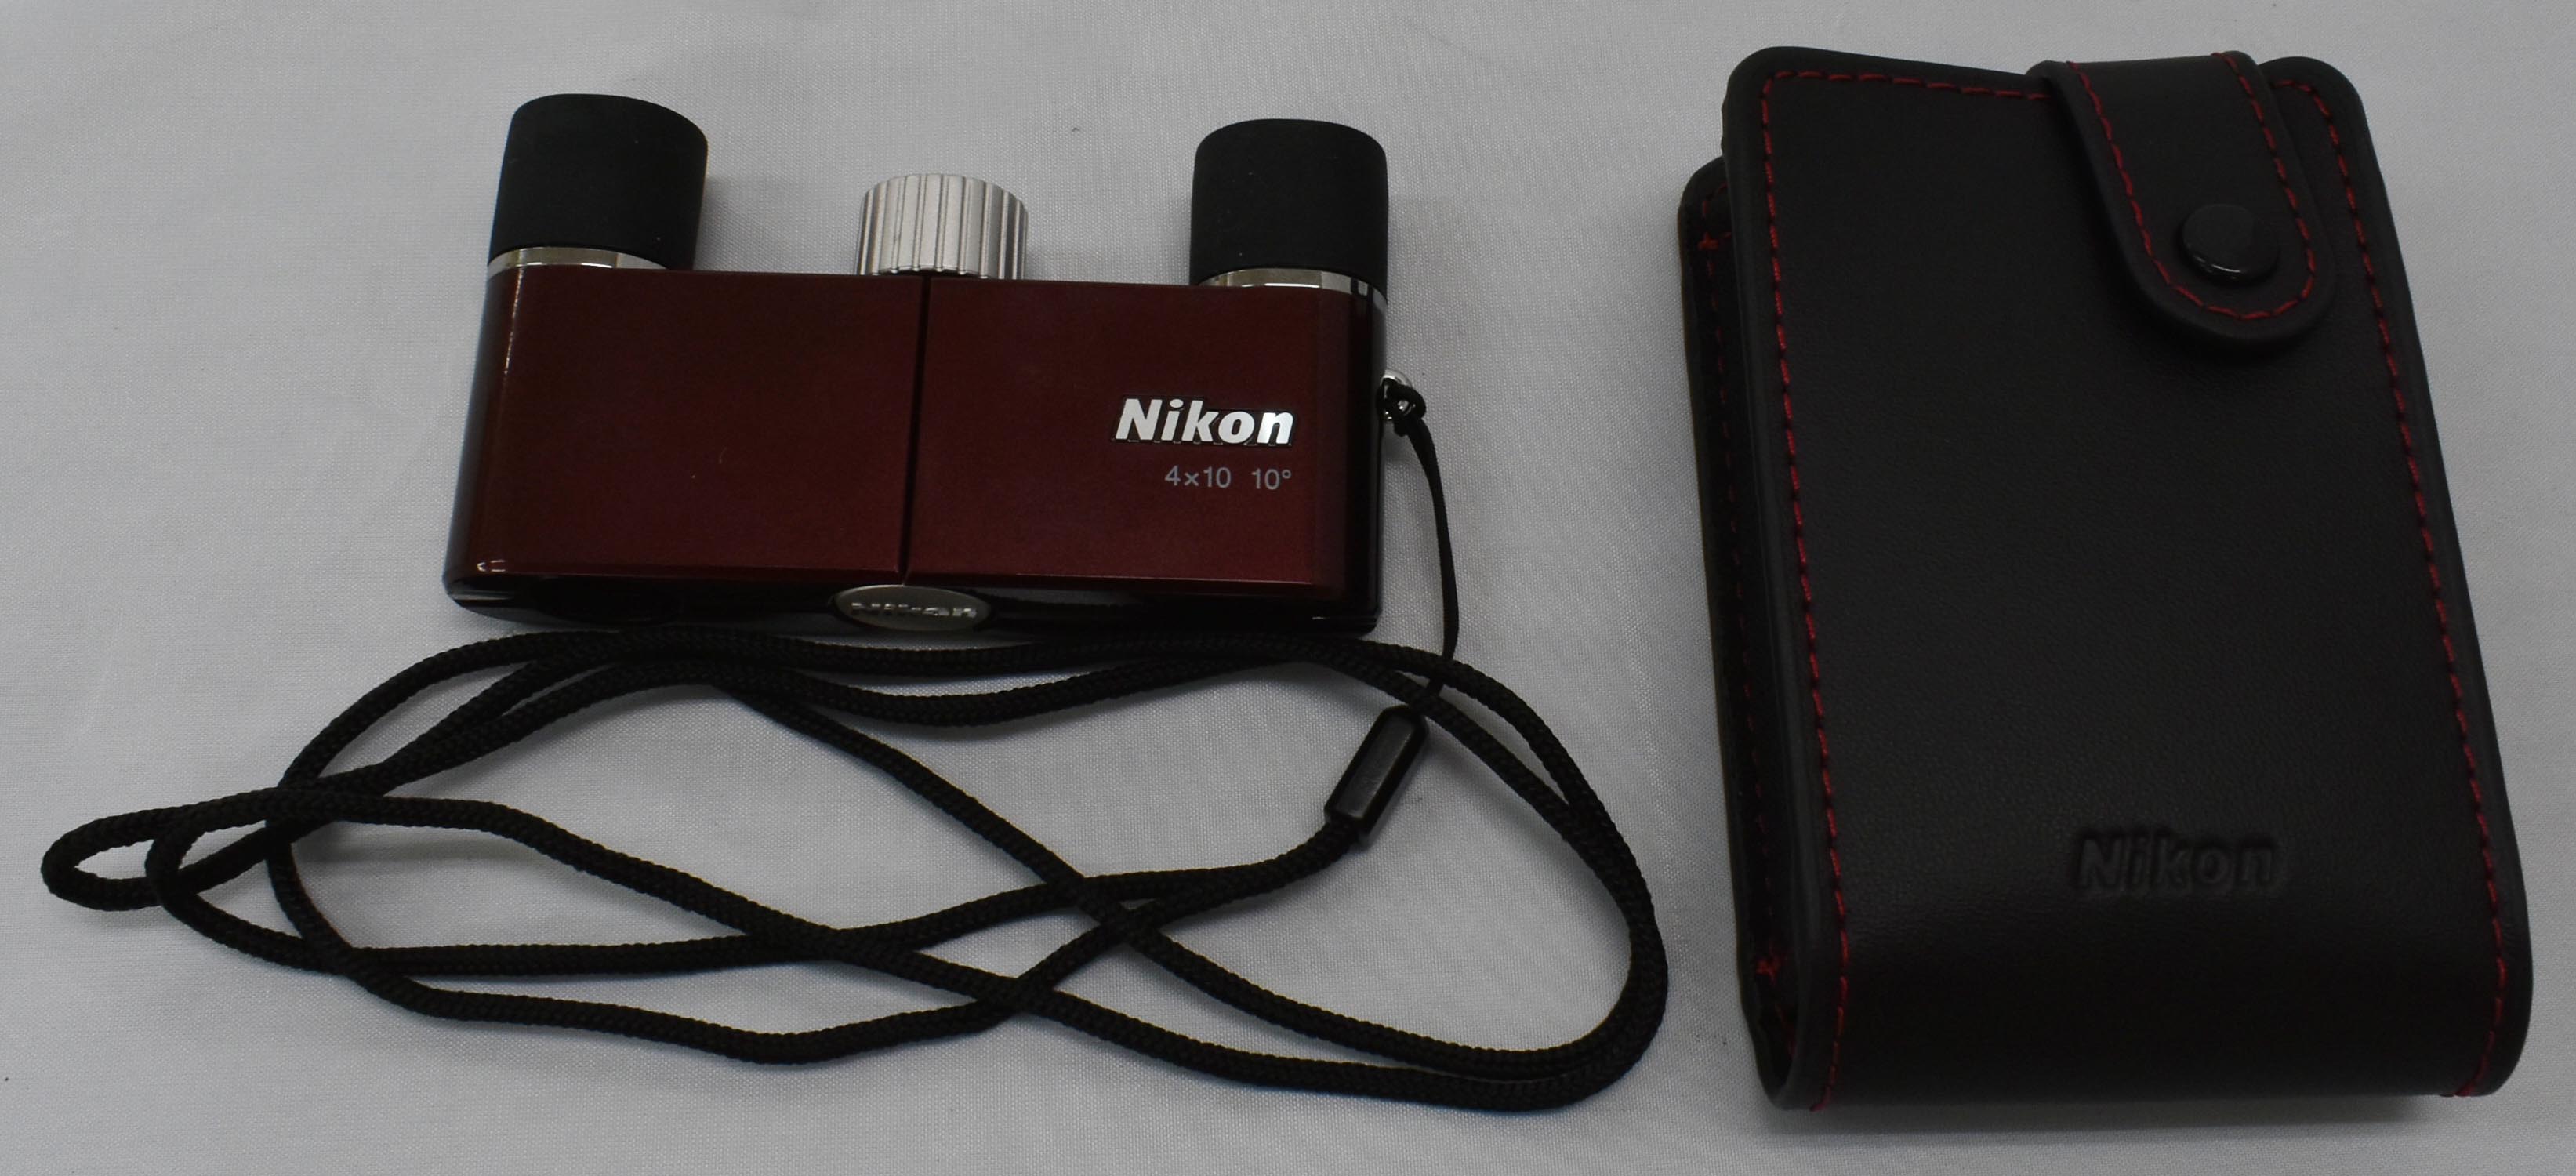 Nikon 双眼鏡 遊 4X10D CF ダハプリズム式 4倍10口径 ワインレッド